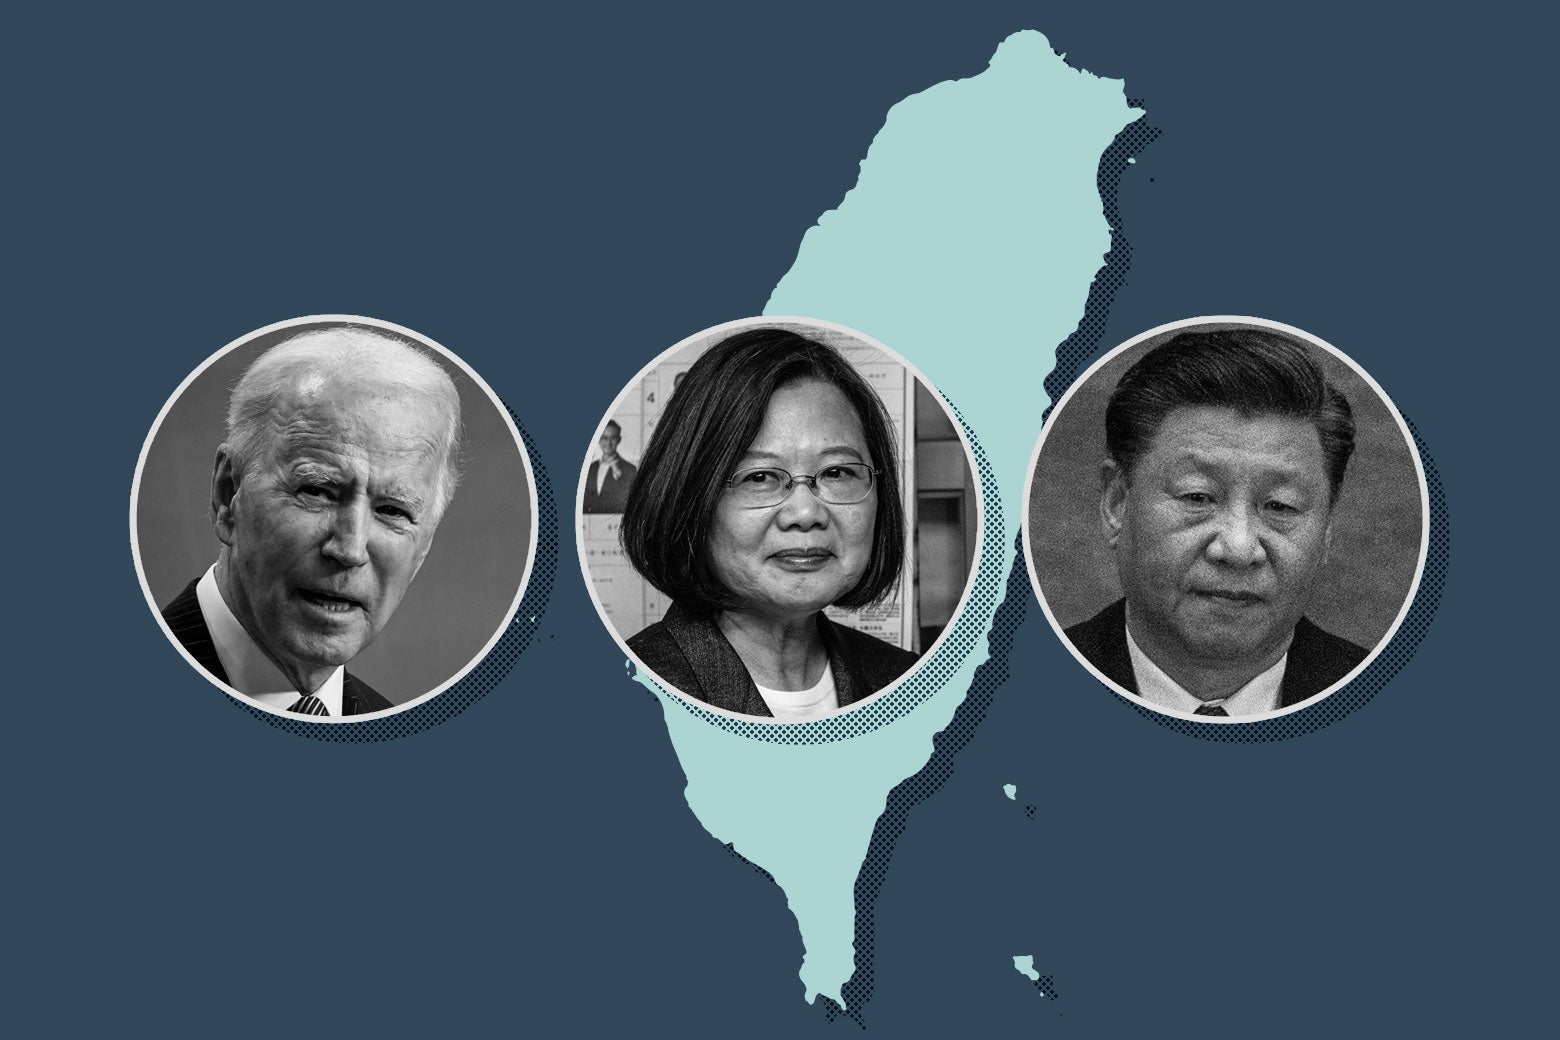 Photos of Joe Biden, Tsai Ing-wen, and Xi Jinping over an outline of Taiwan.